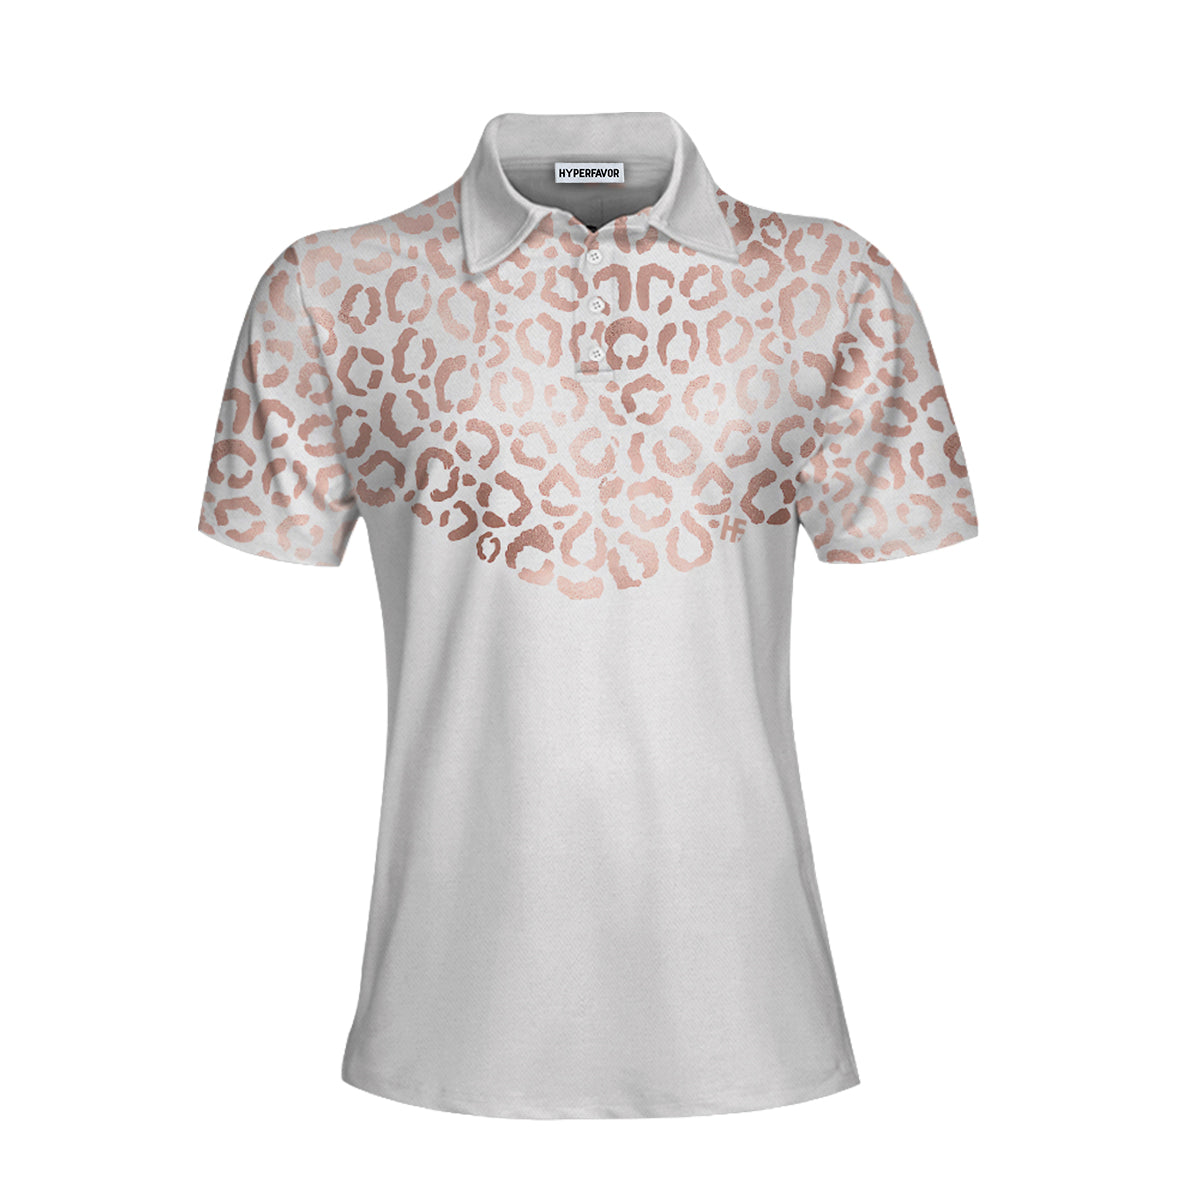 Rose Gold Leopard Pattern Shirt Short Sleeve Women Polo Shirt Coolspod